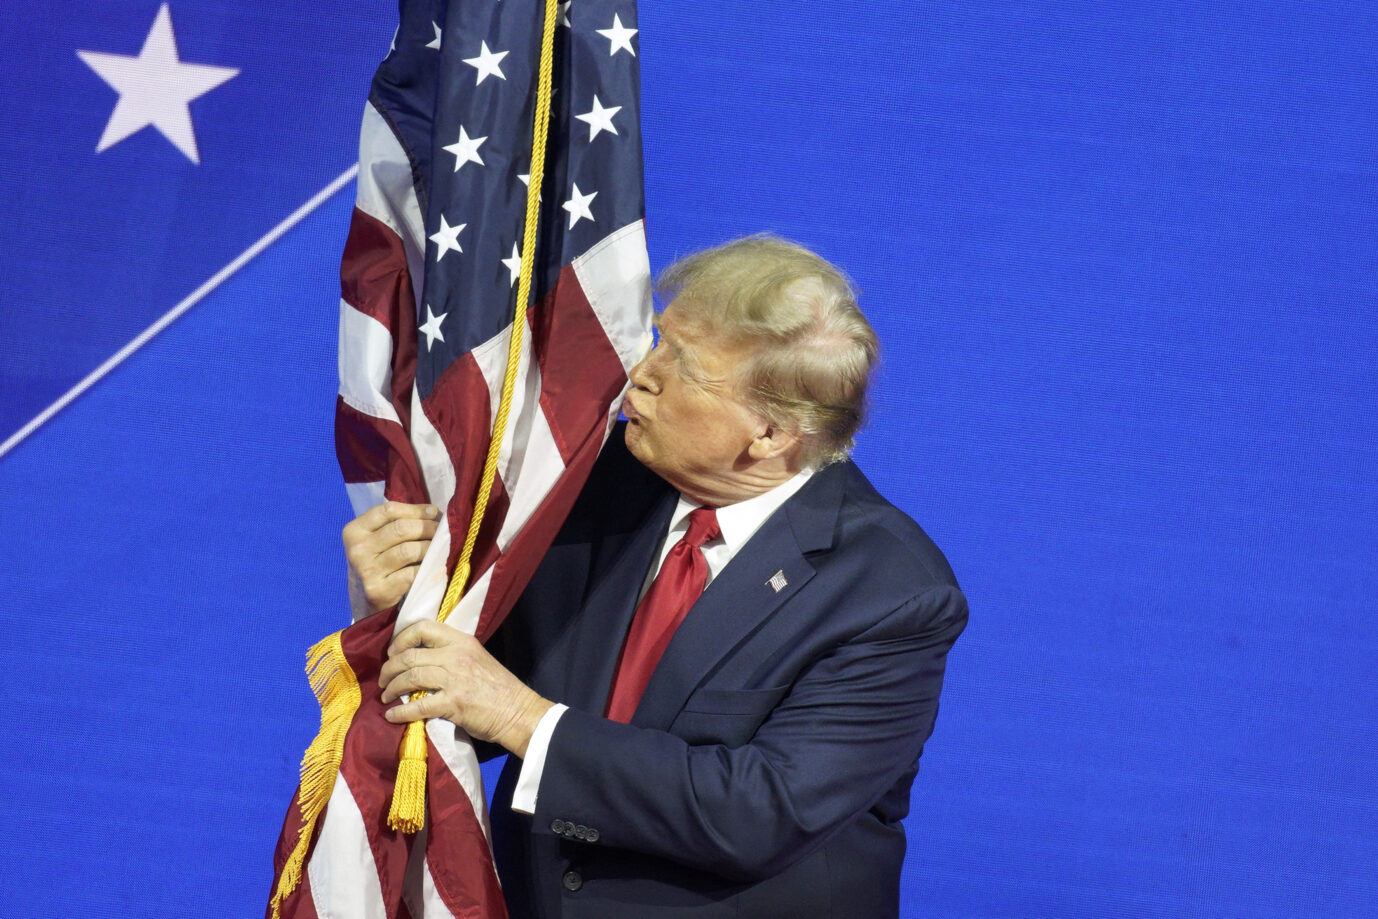 Donald Trump umarmt bei einem Treffen konservativer Politiker die US-Fahne. Seine Chancen steigen, erneut US-Präsident zu werden.